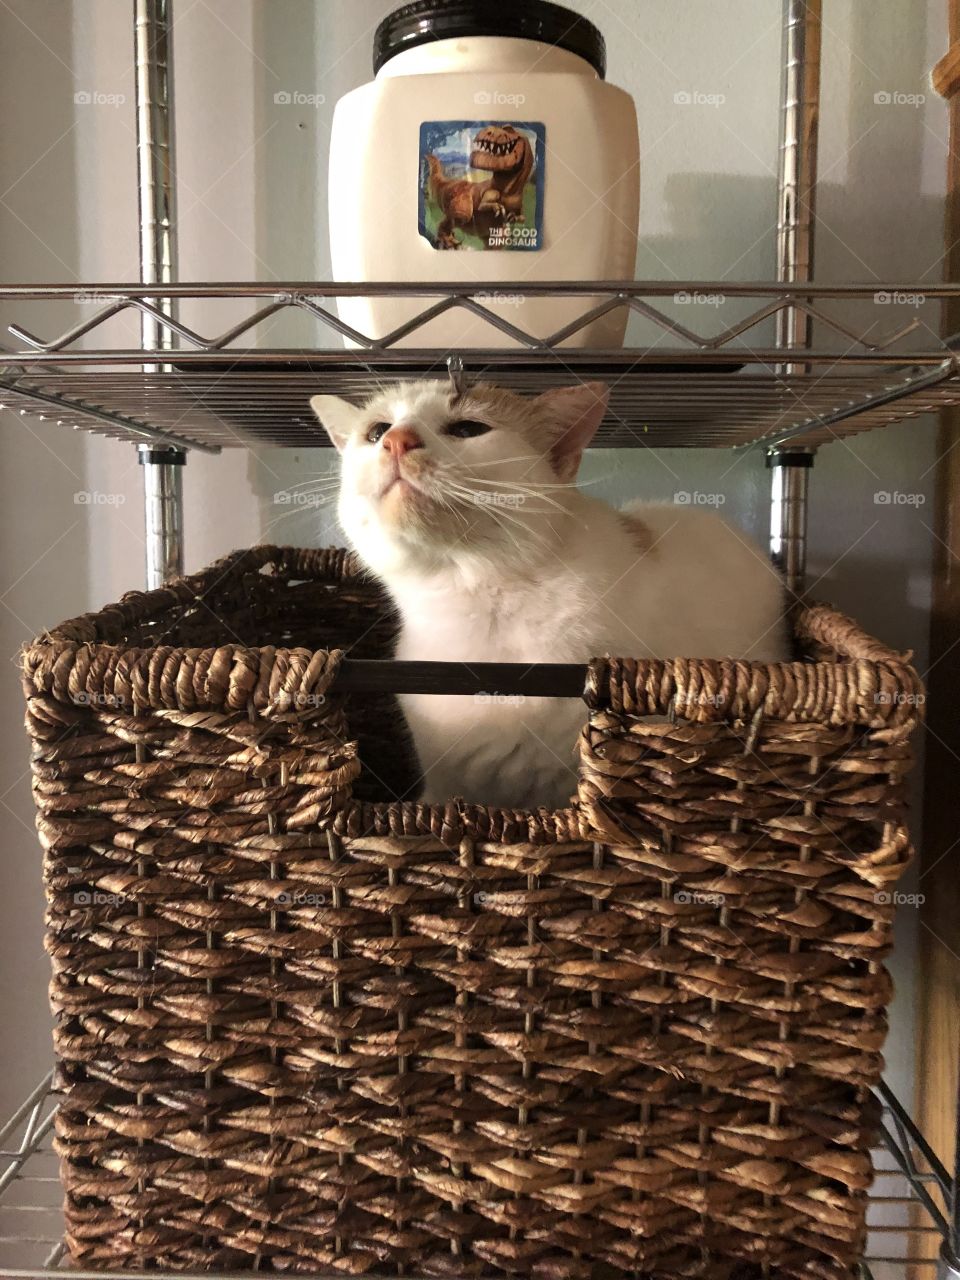 Cat in basket on metal shelf